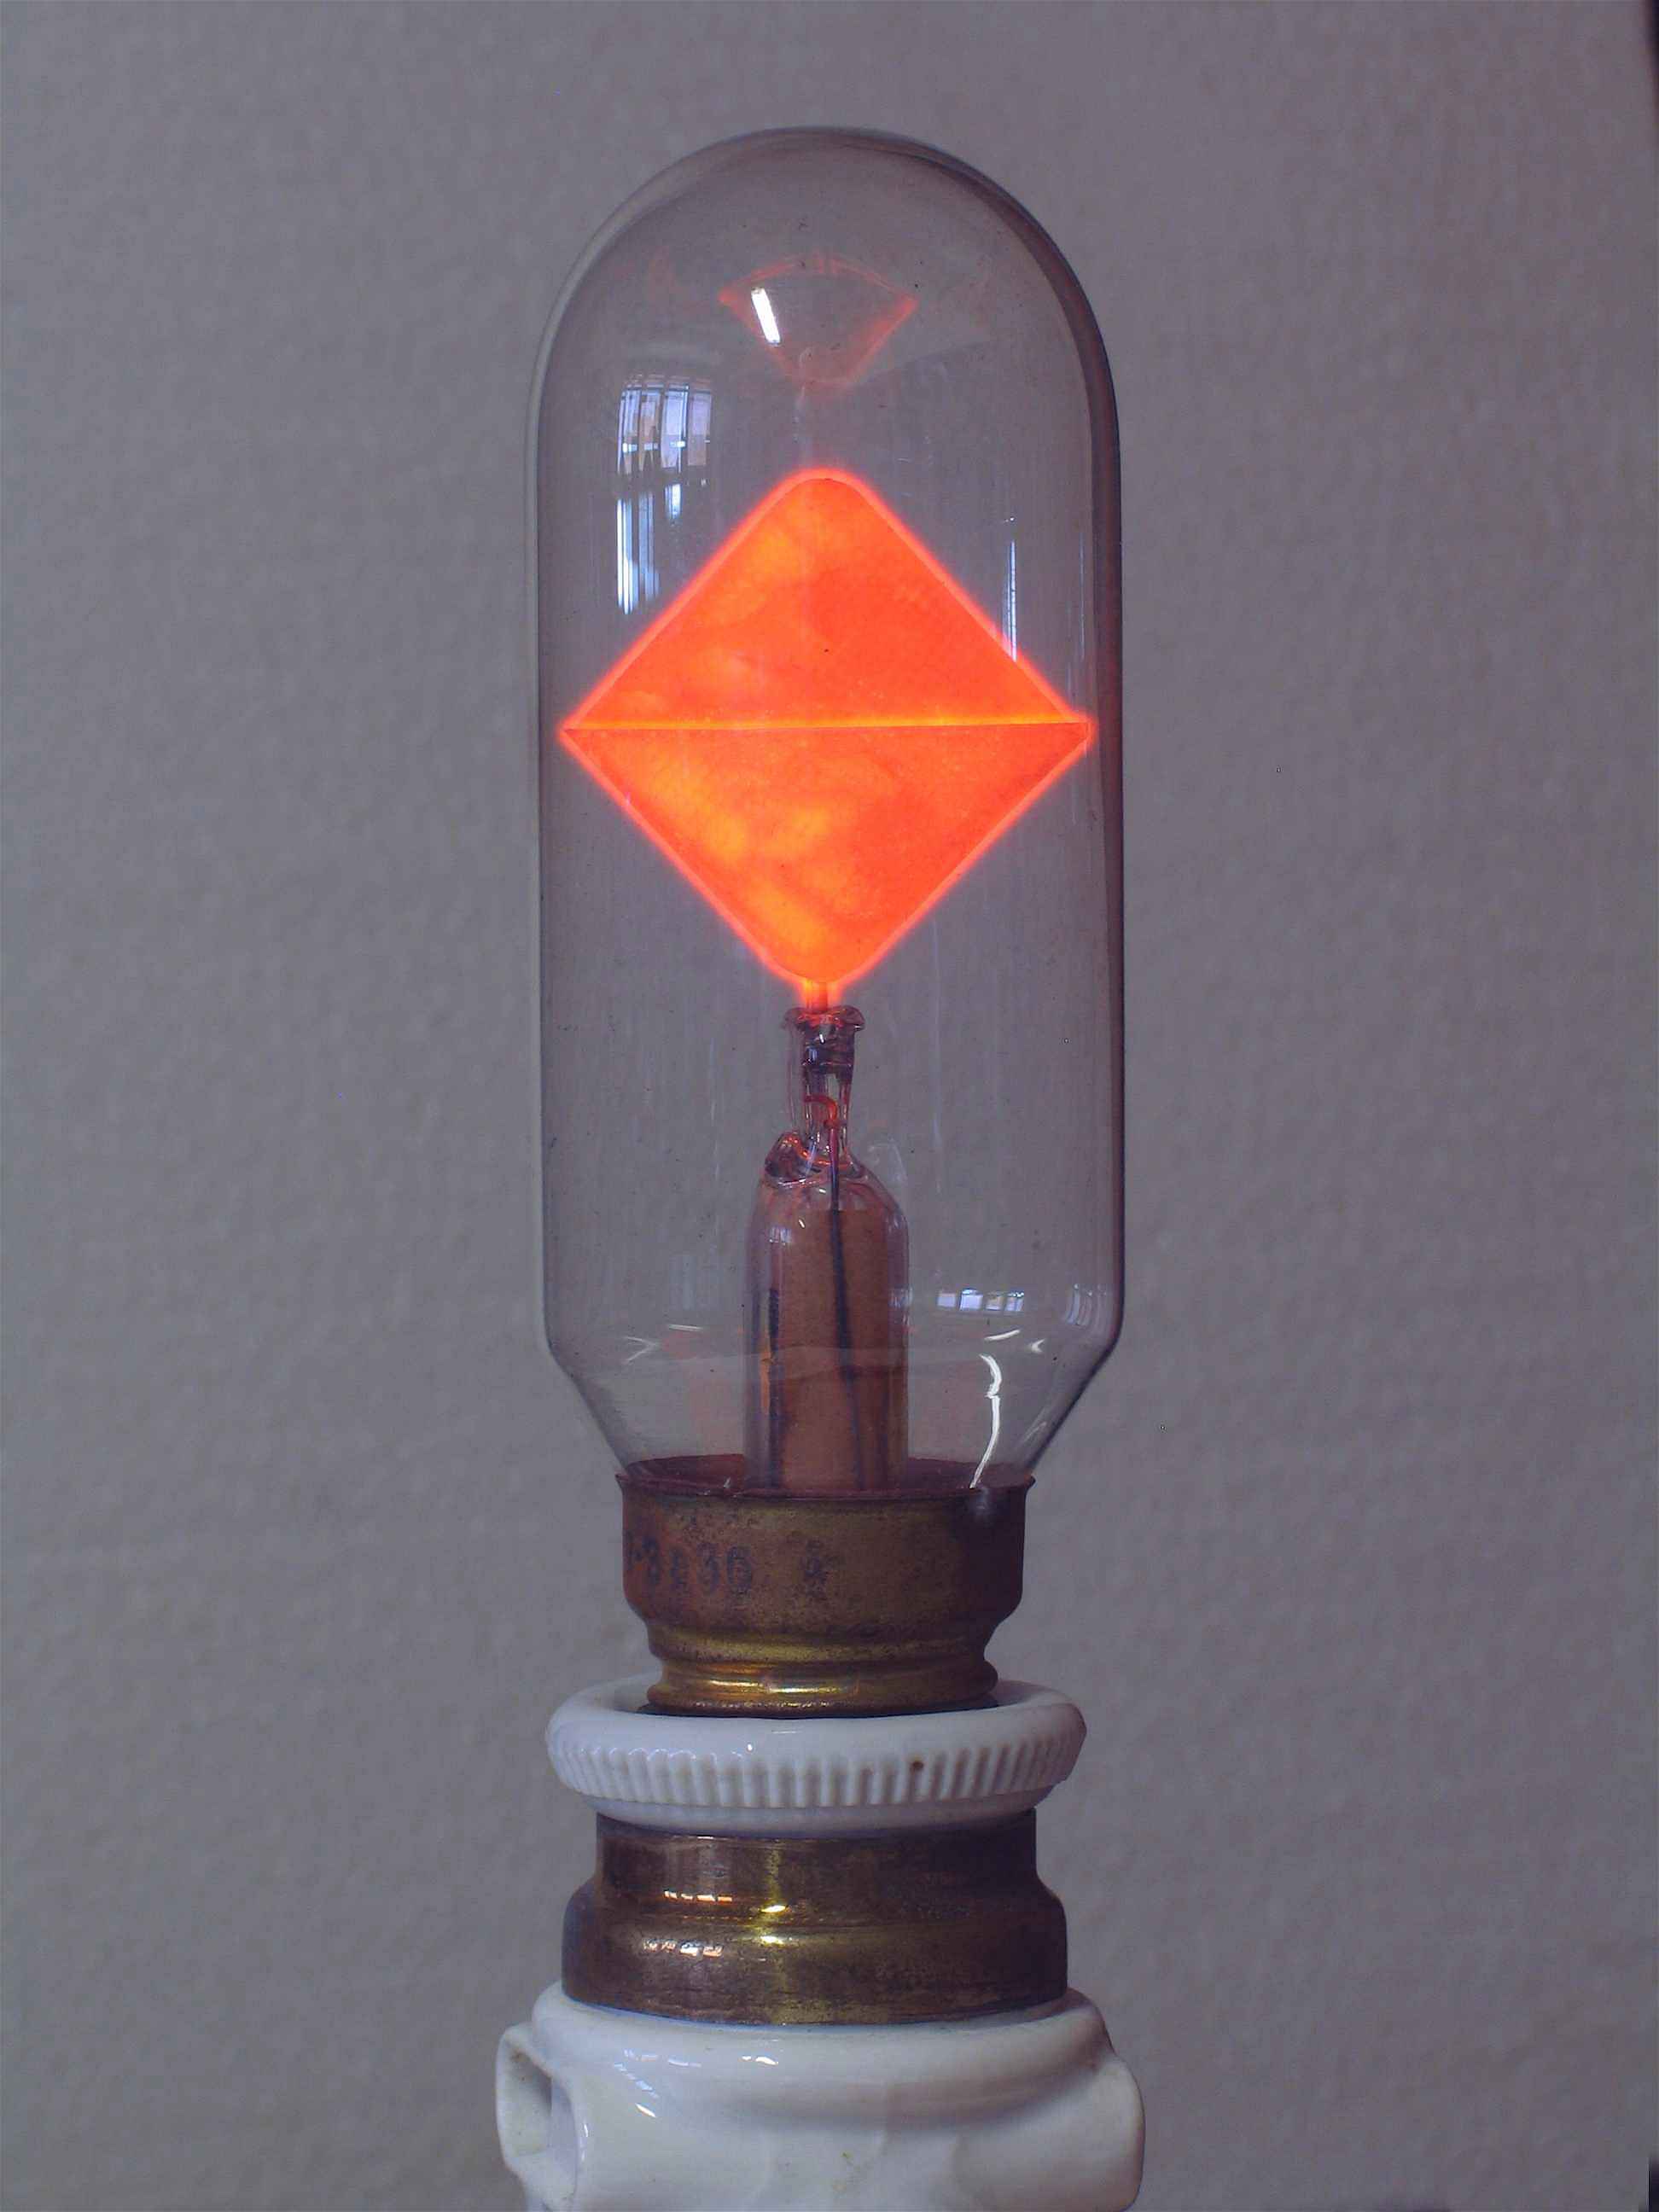 Lampes à décharge dans le néon
(deux triangles)